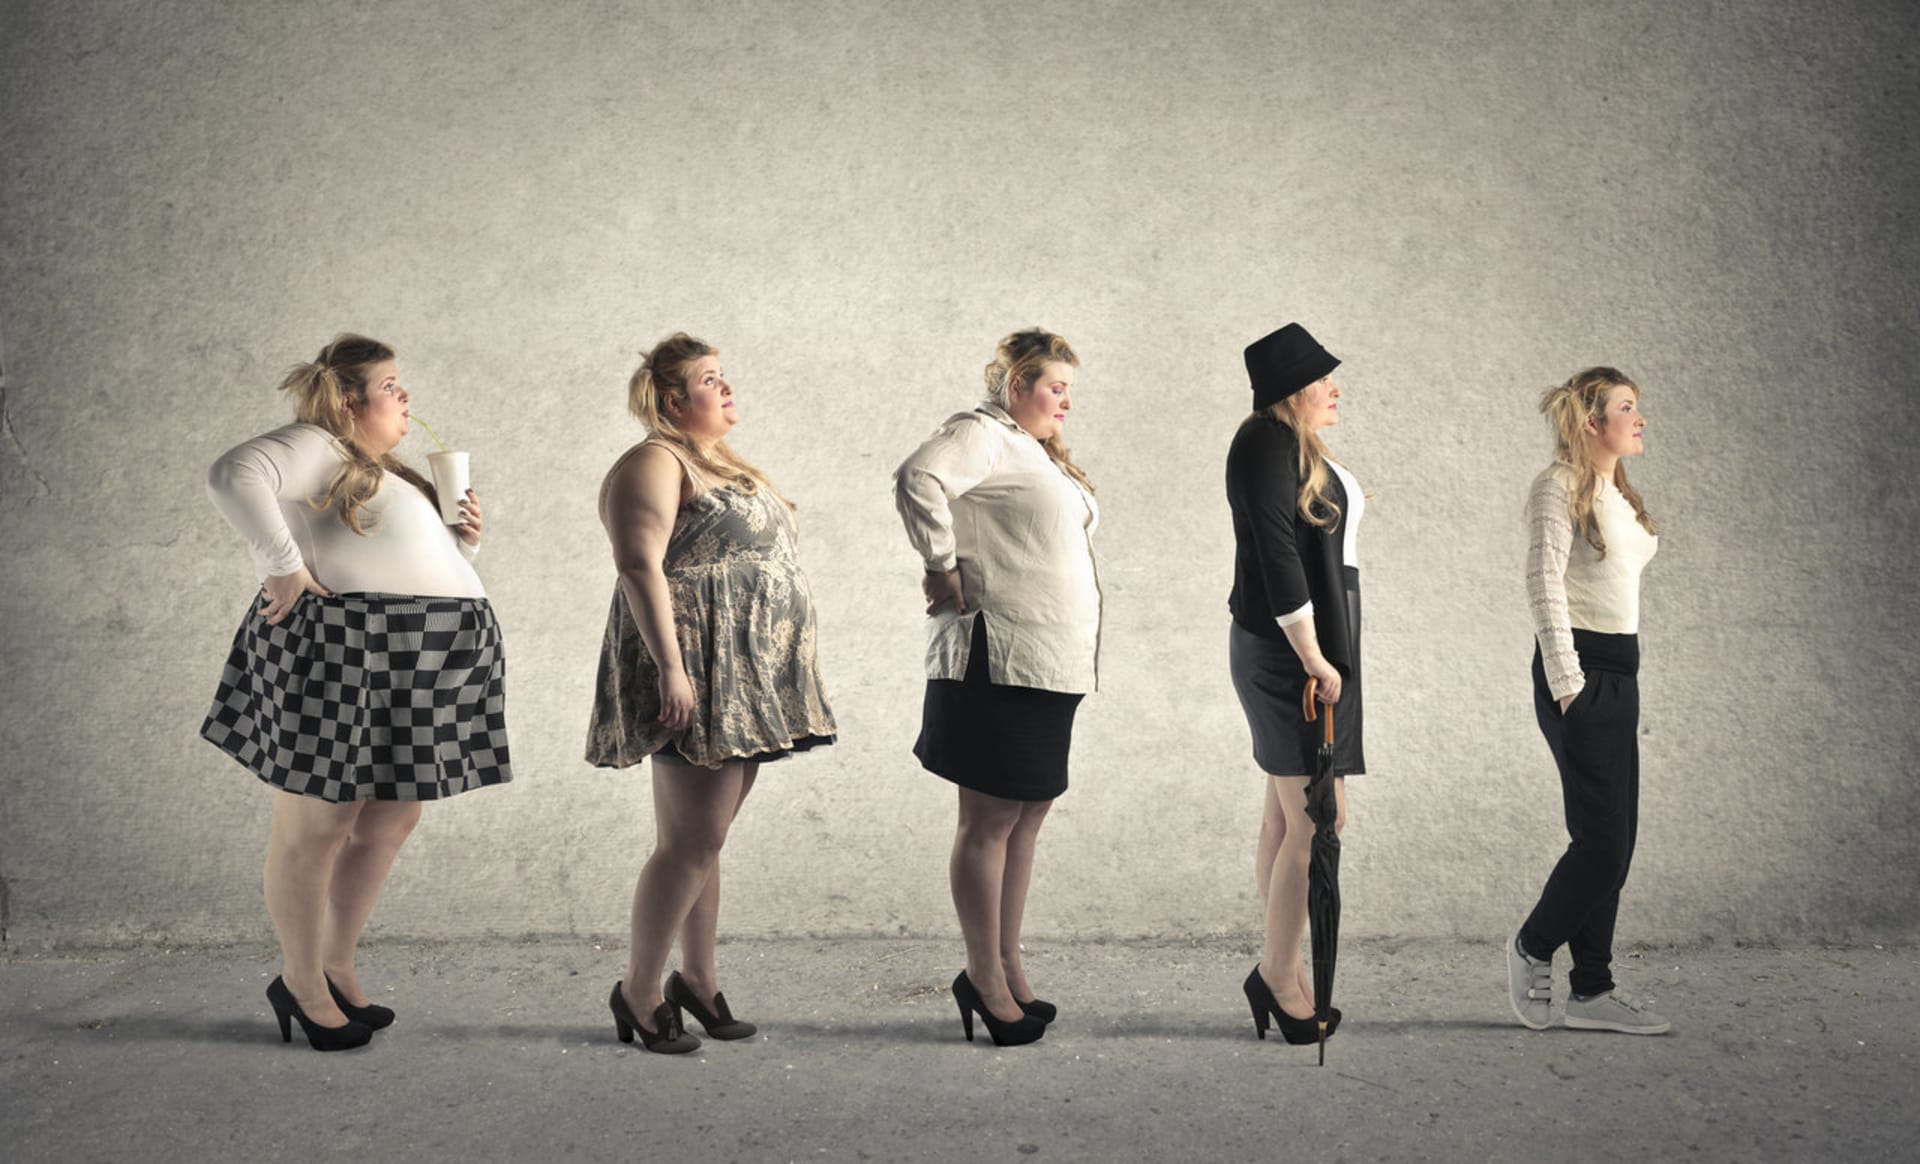 od obezity ke štíhlosti - pevná vůle, diety nebo genetika?